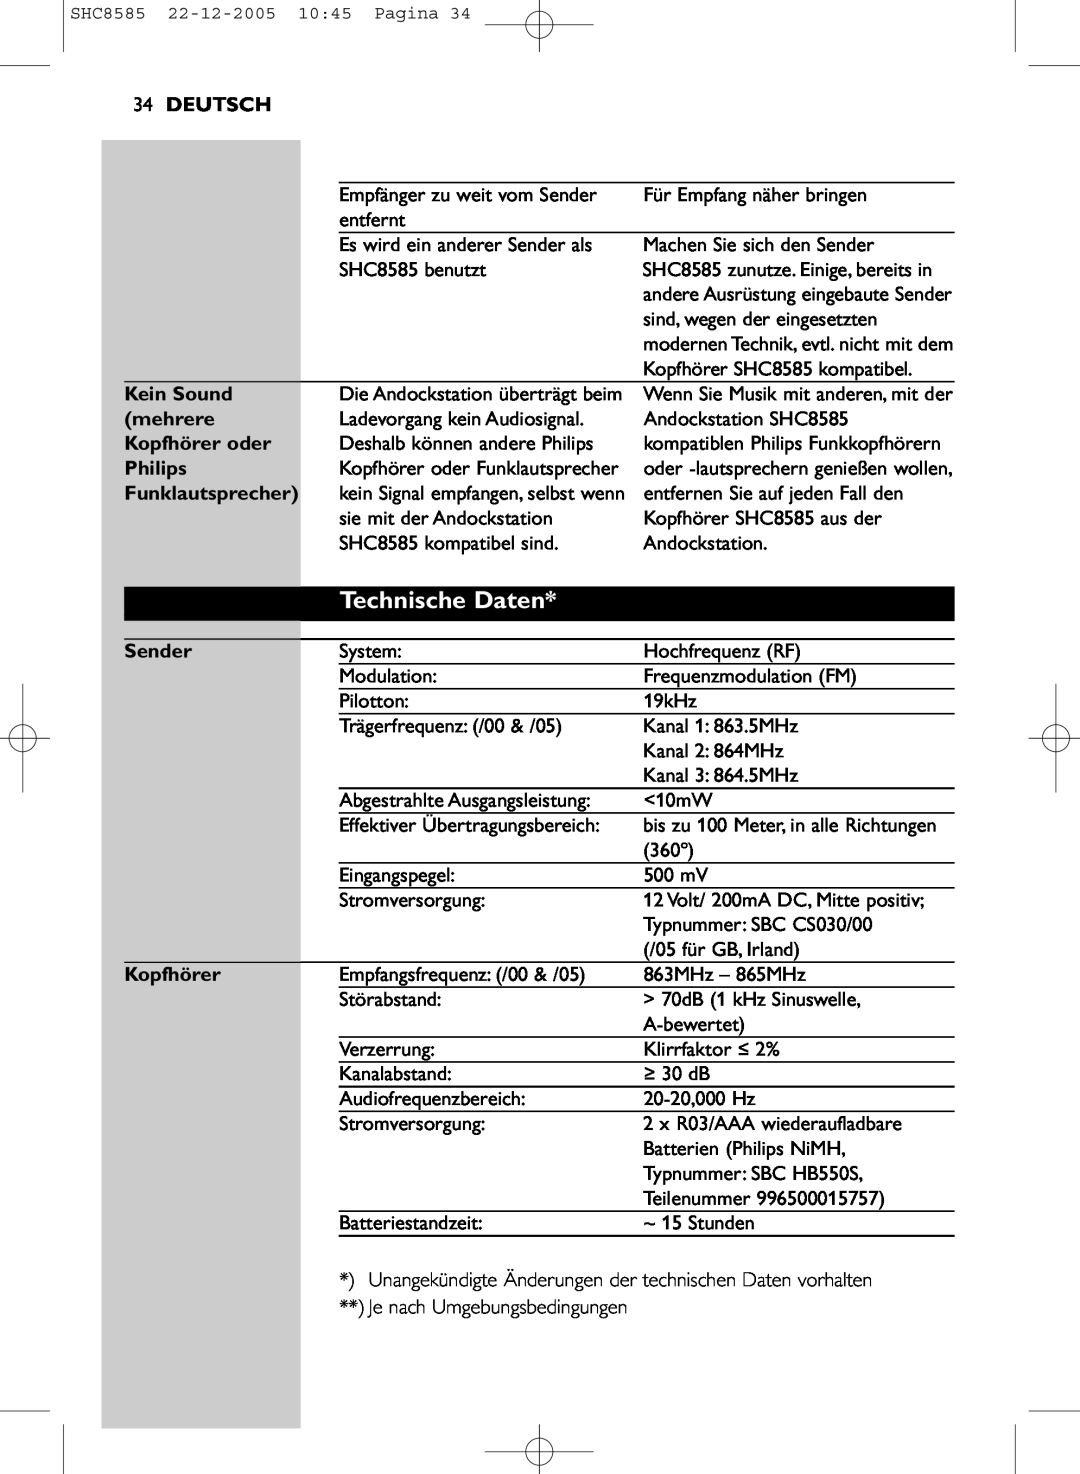 Philips SHC8585/05 manual Technische Daten, Deutsch, Kein Sound, mehrere, Kopfhörer oder, Philips, Funklautsprecher, Sender 